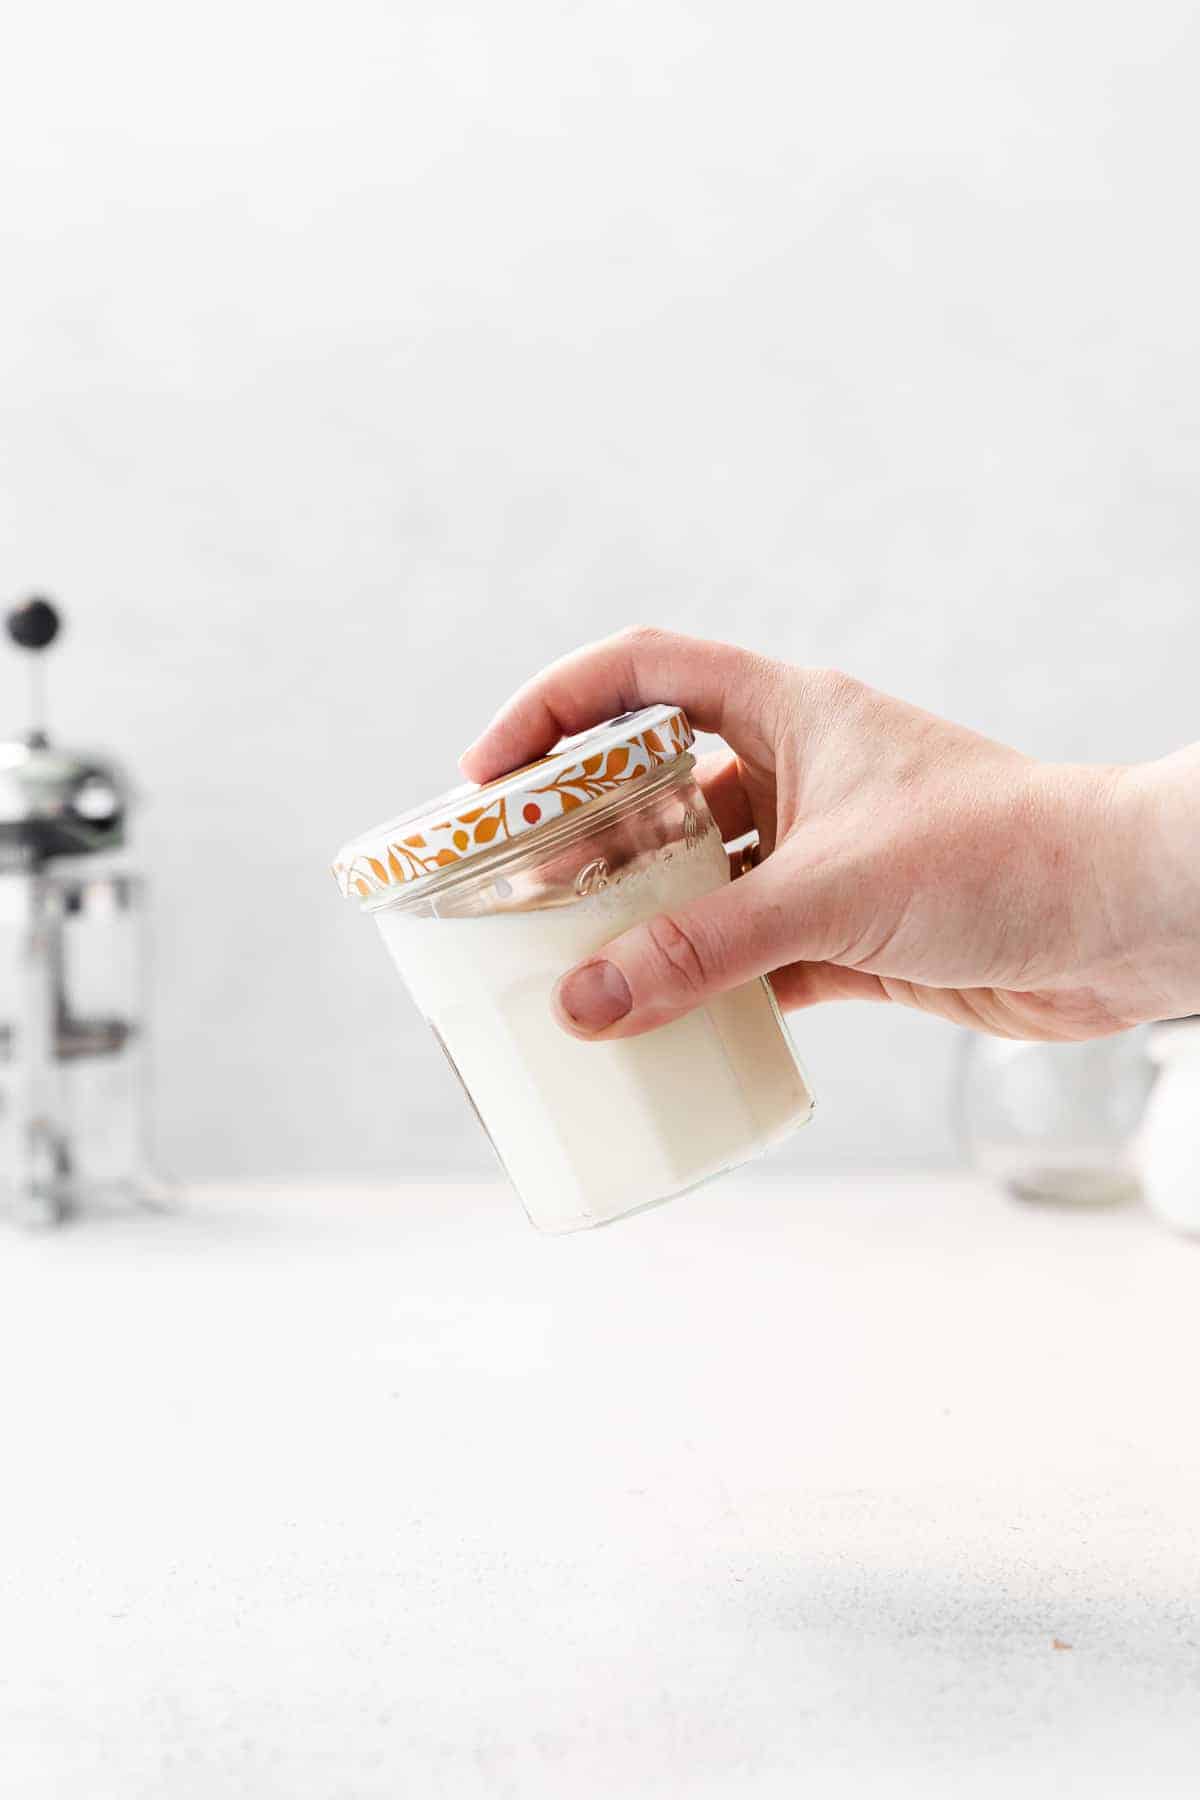 Starbucks' Copycat Vanilla Foam Cold Brew — Honeysuckle